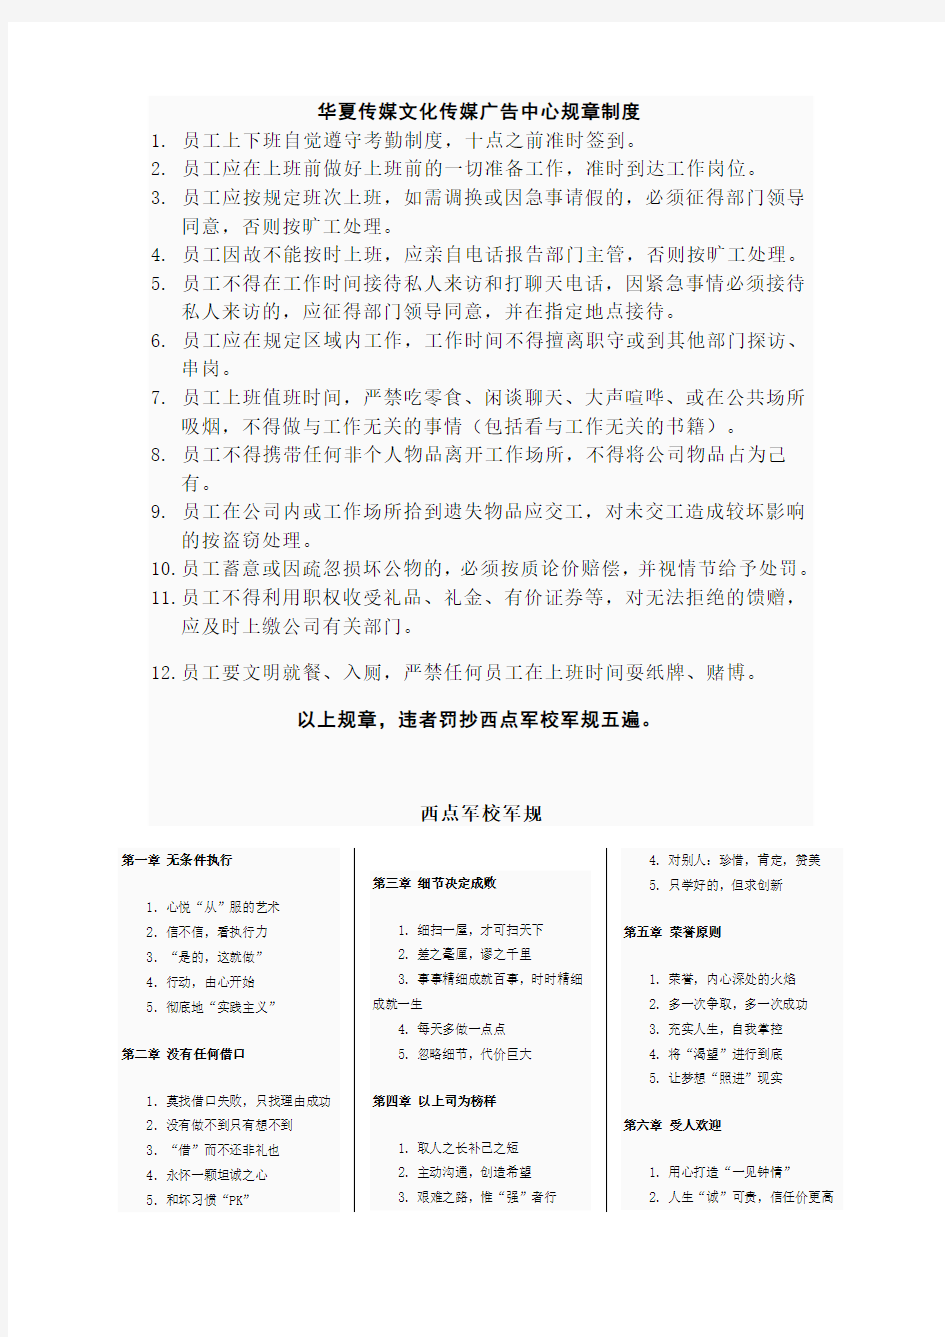 华夏功勋文化传媒广告设计公司规章制度